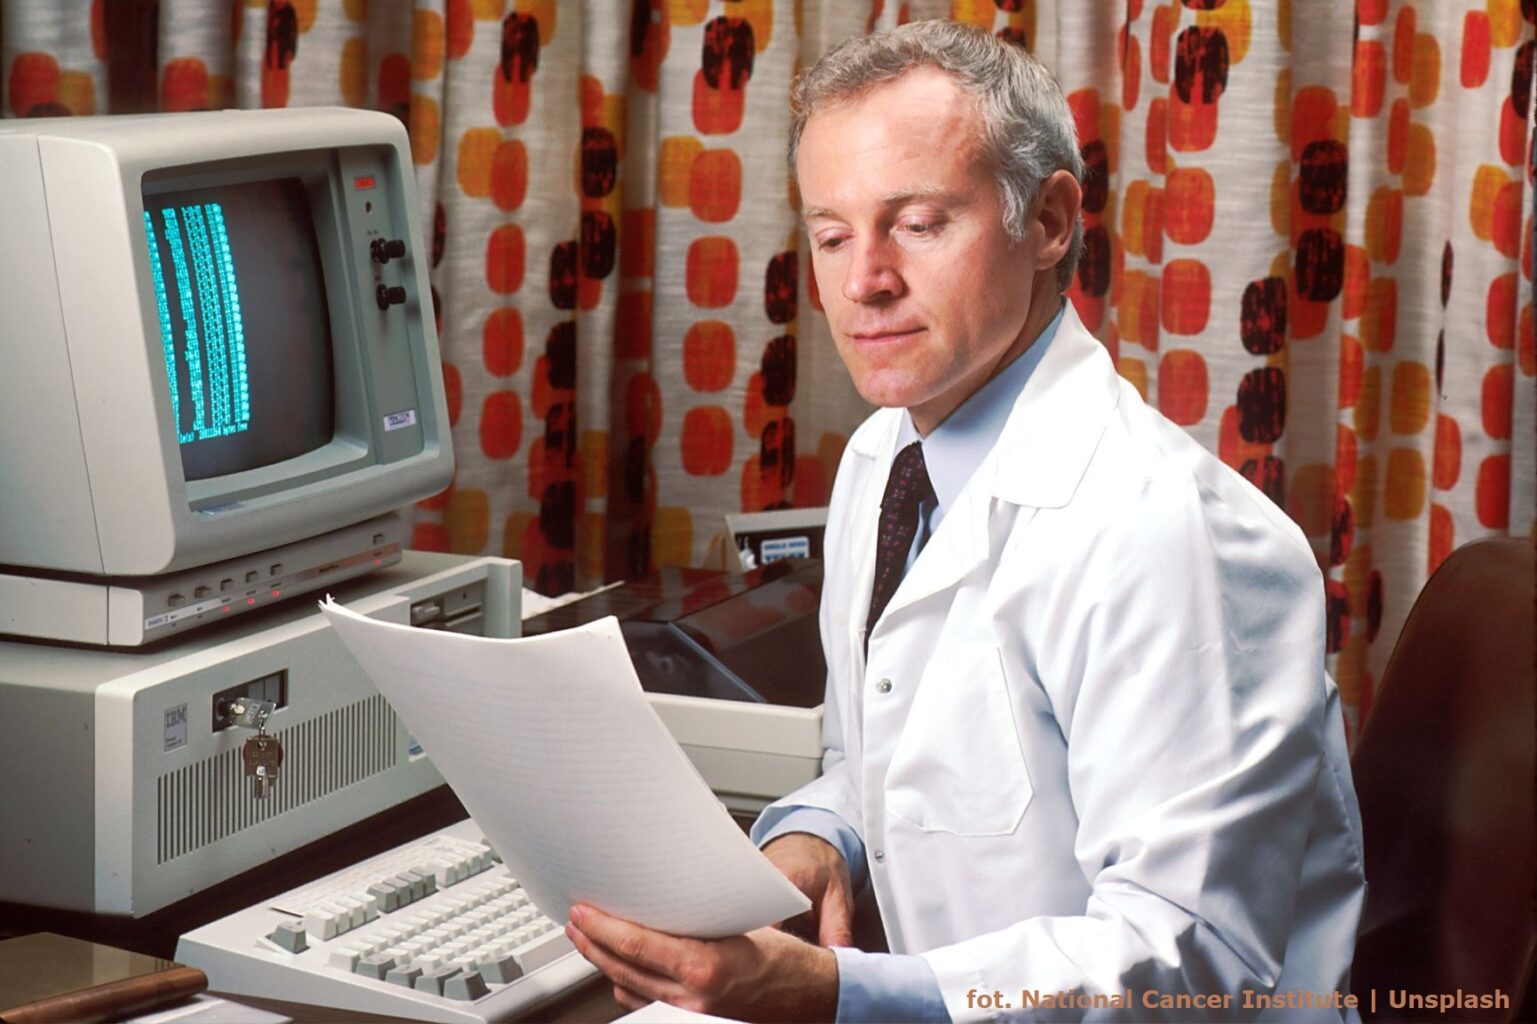 Naukowiec w fartuchu siedzi przy biurku trzymając kartki papieru. Przed nim monitor komputera w starym stylu